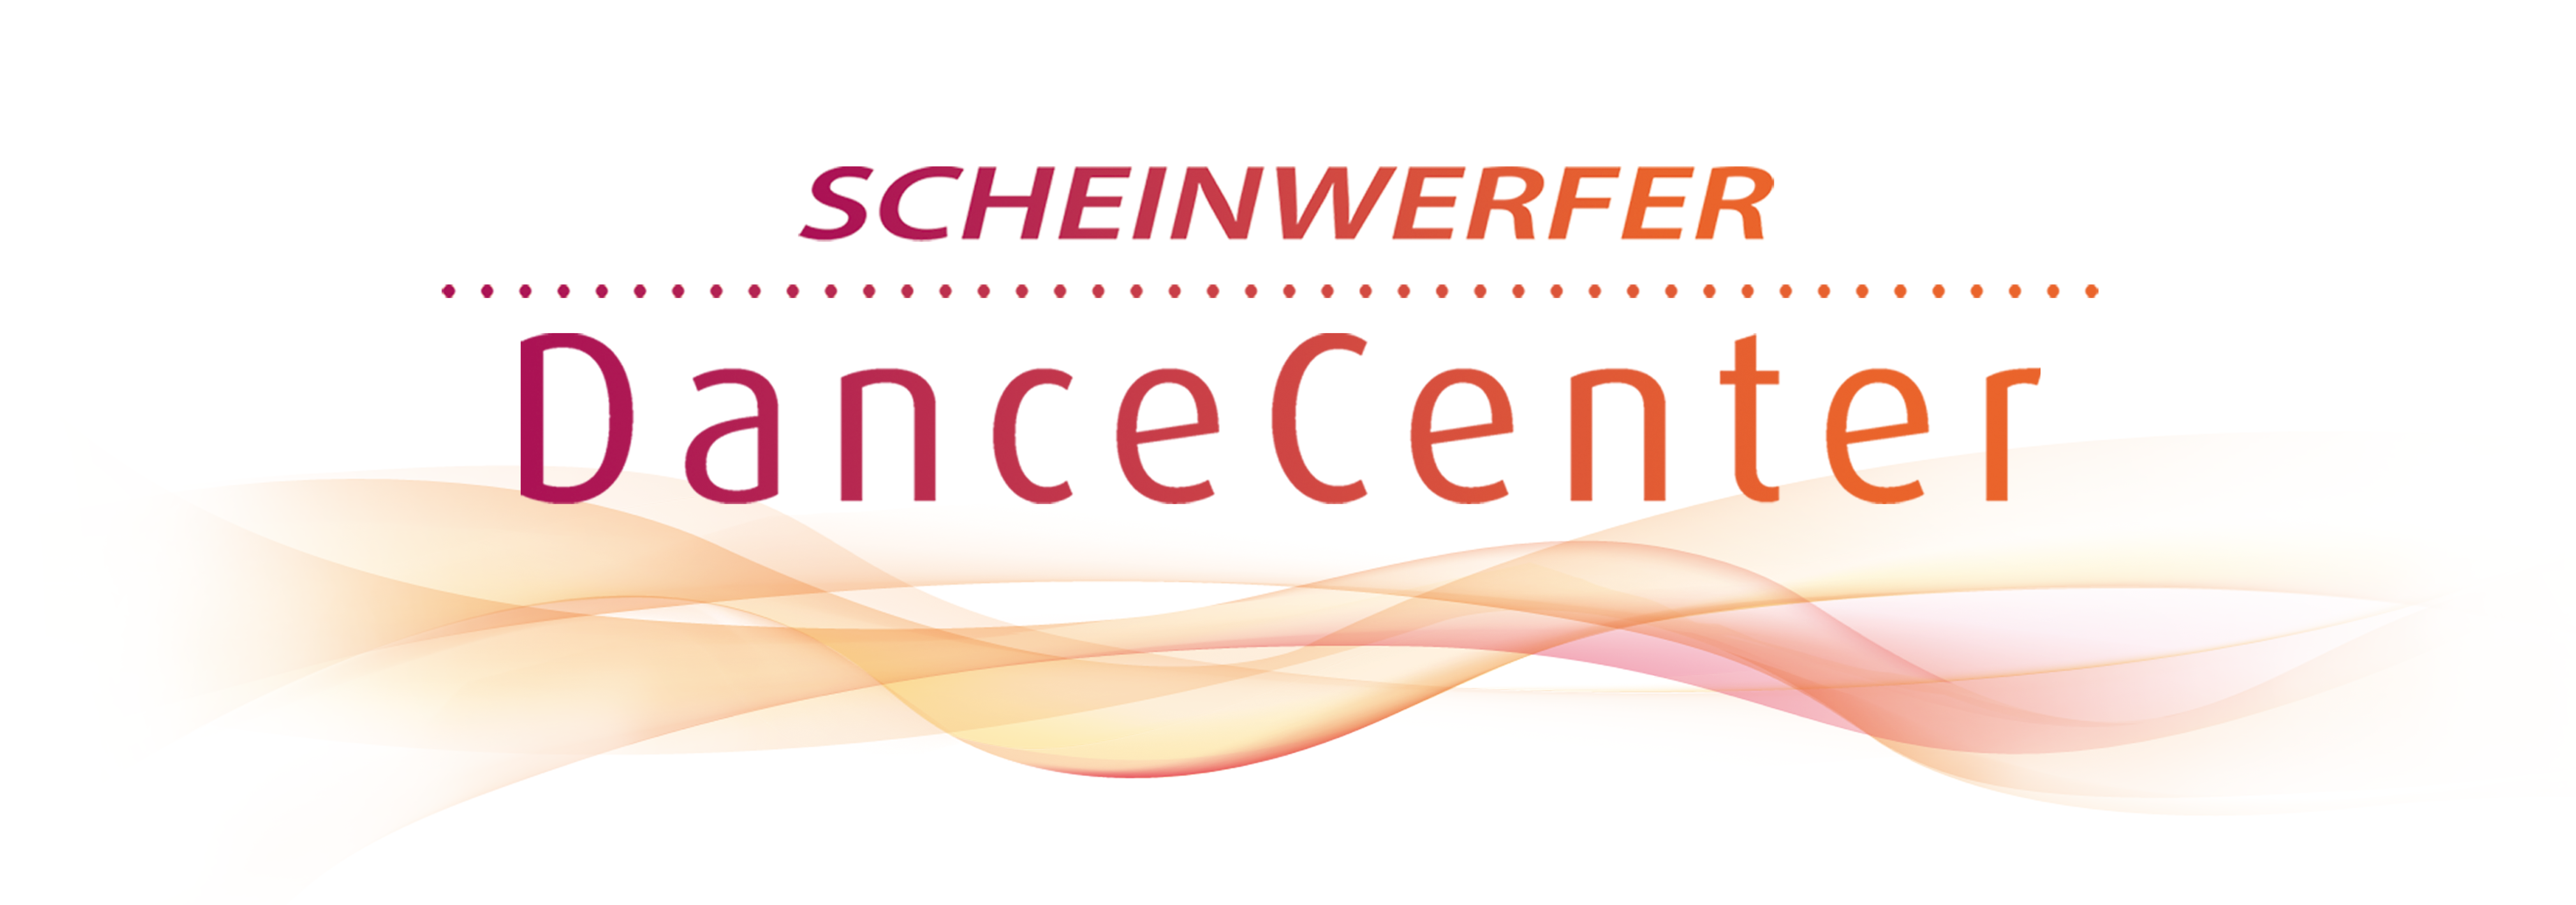 Scheinwerfer_Dancecenter